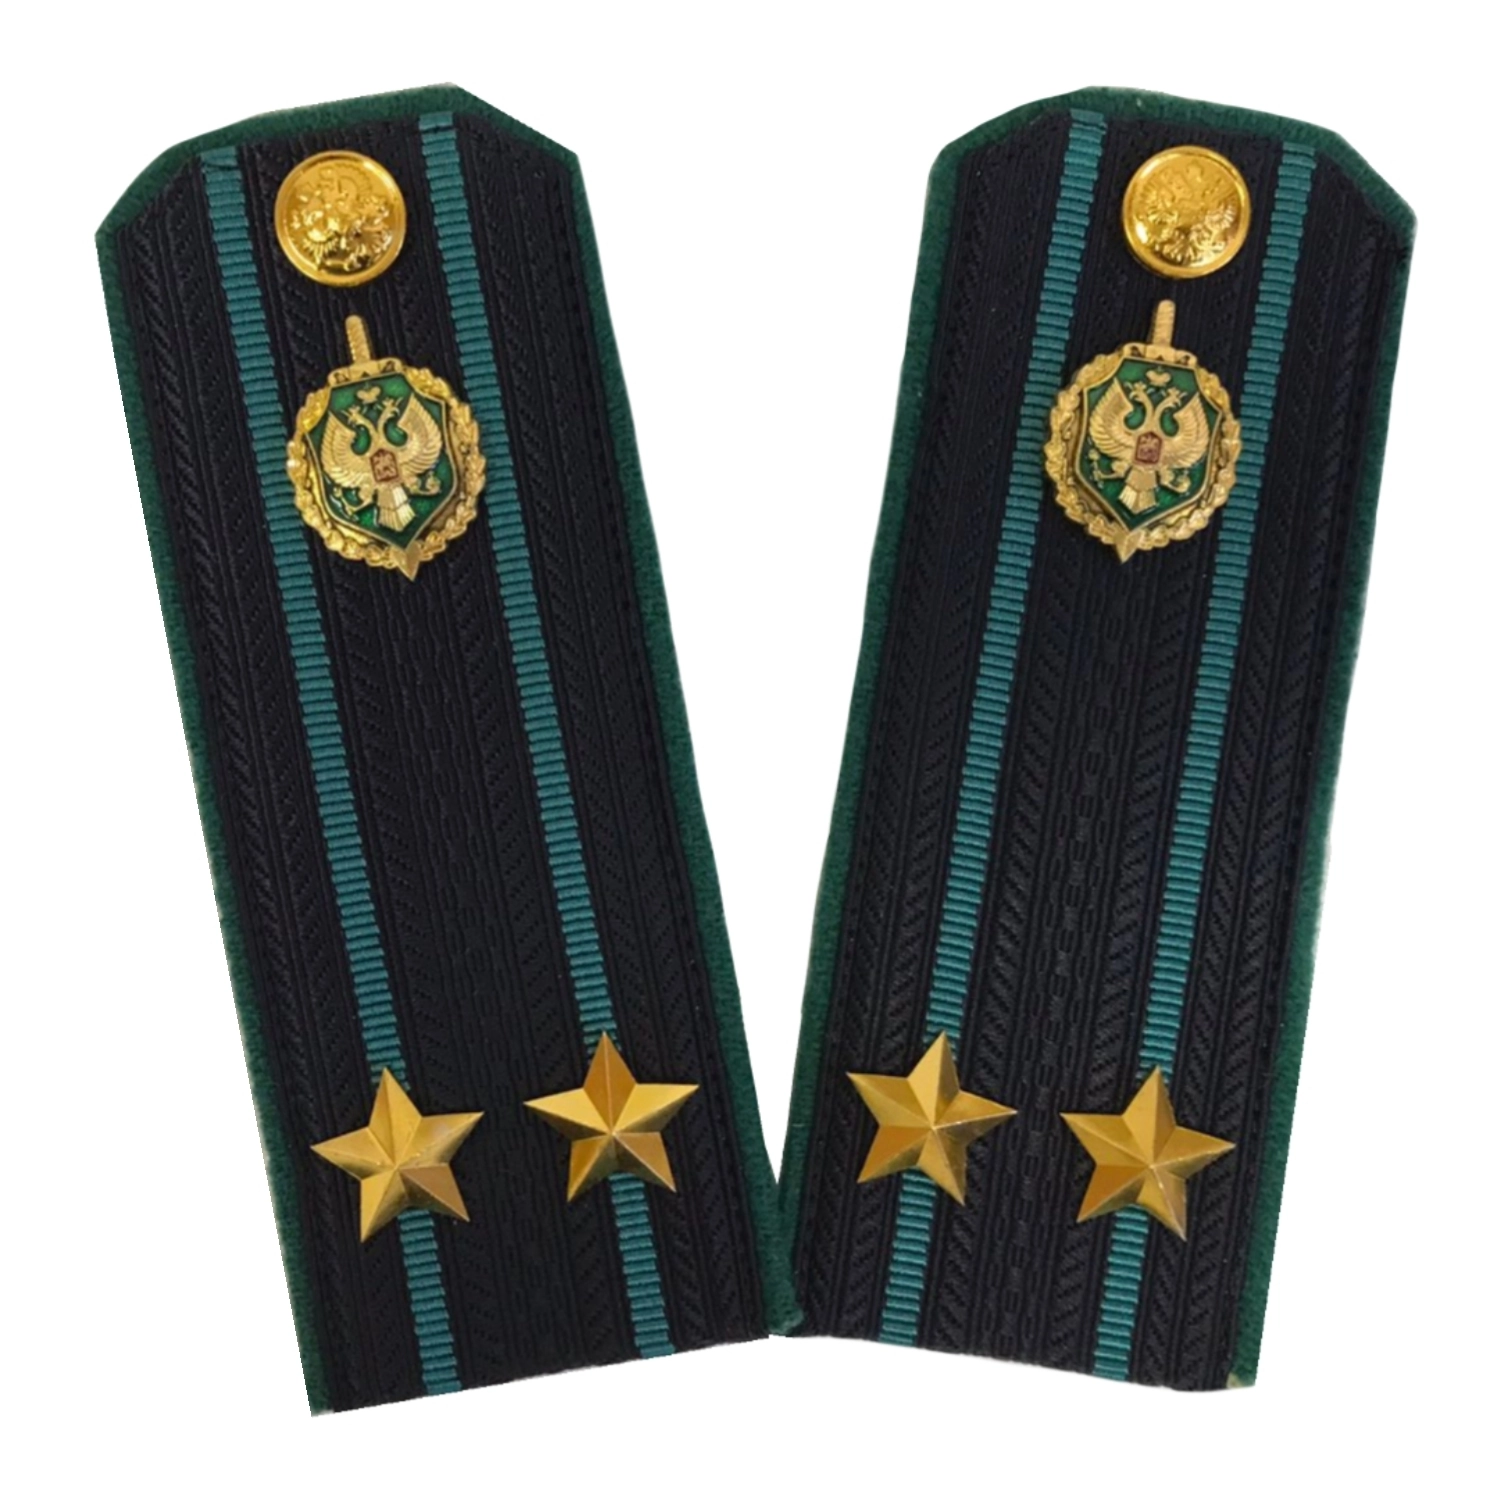 Погоны Пограничной службы ПС ФСБ в сборе картон на куртку звание Подполковник